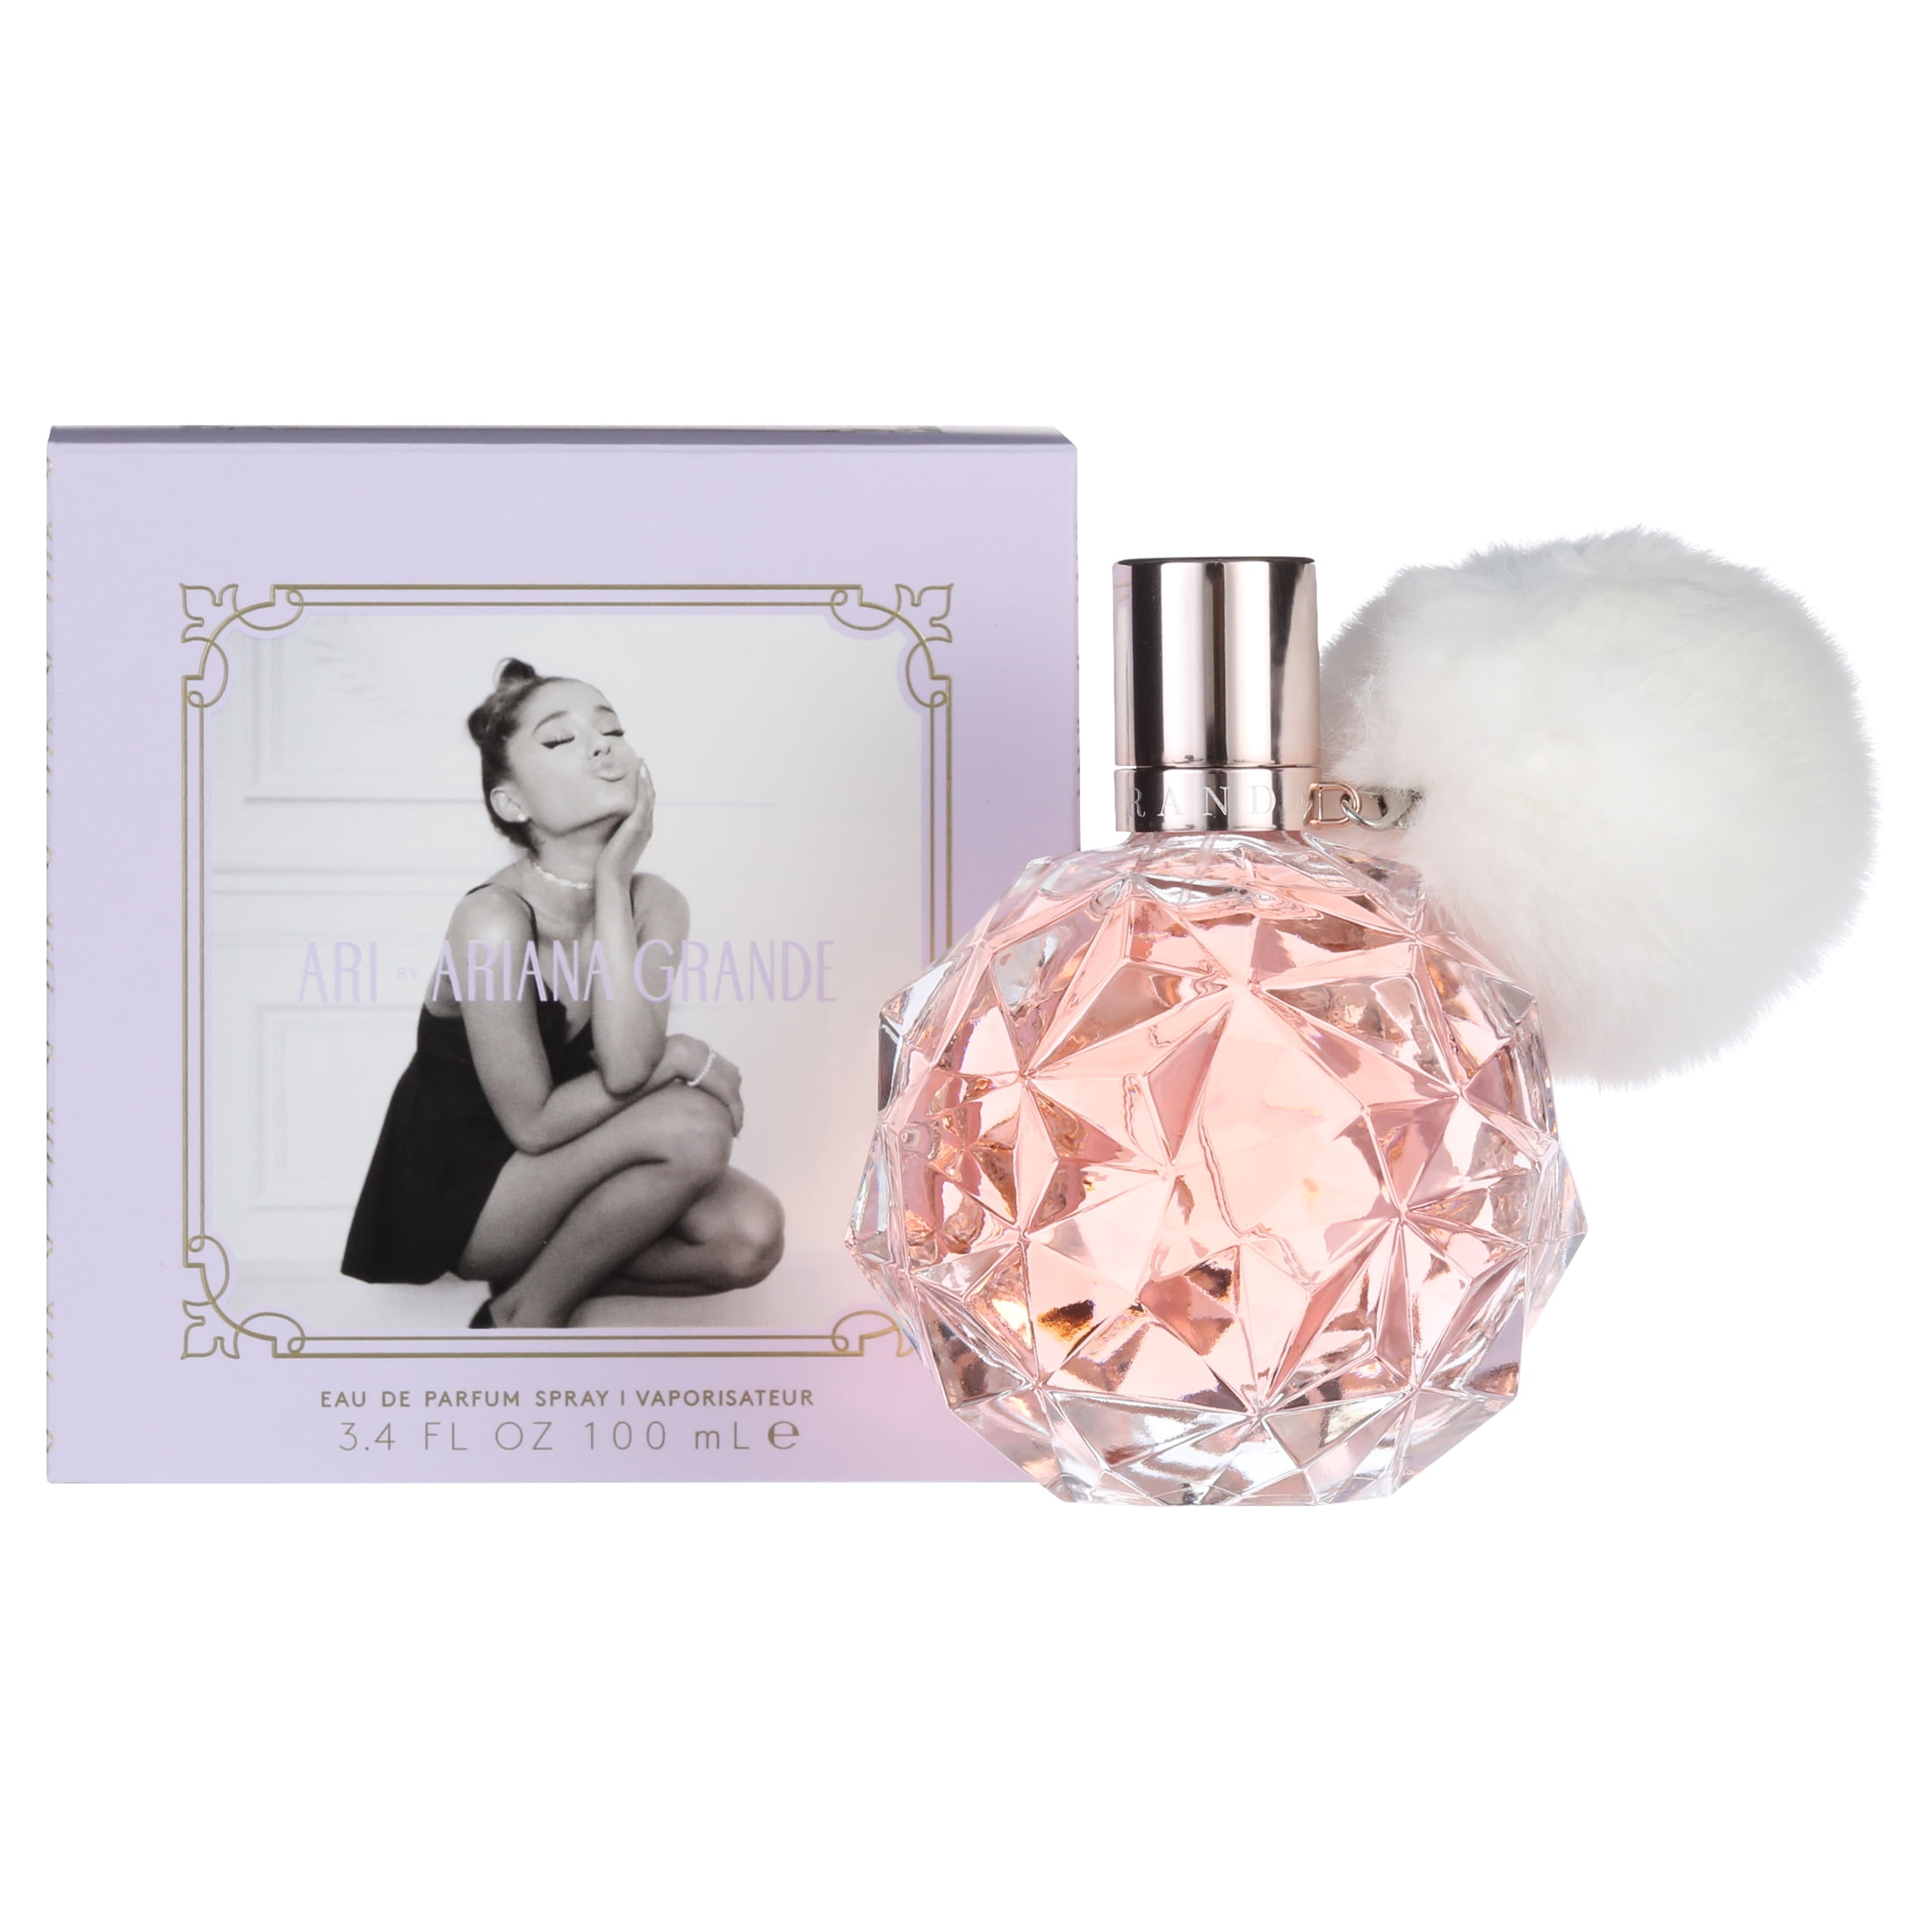 Ariana Grande Ari Eau de Parfum, Perfume for Women, 3.4 Oz - Walmart.com